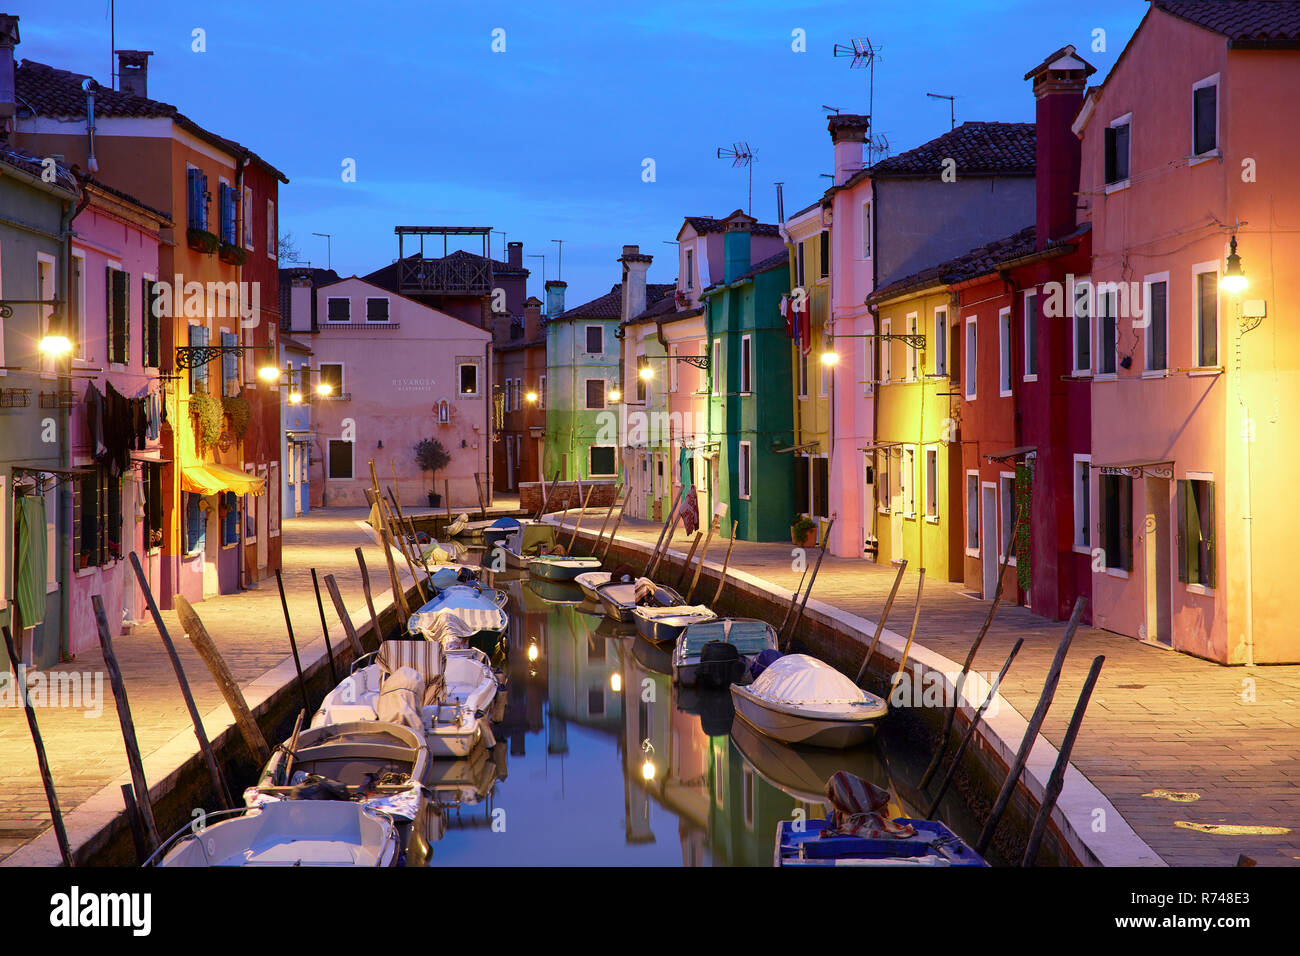 Tradizionali case multicolori sul lungomare al tramonto, Burano, Venezia, Veneto, Italia Foto Stock